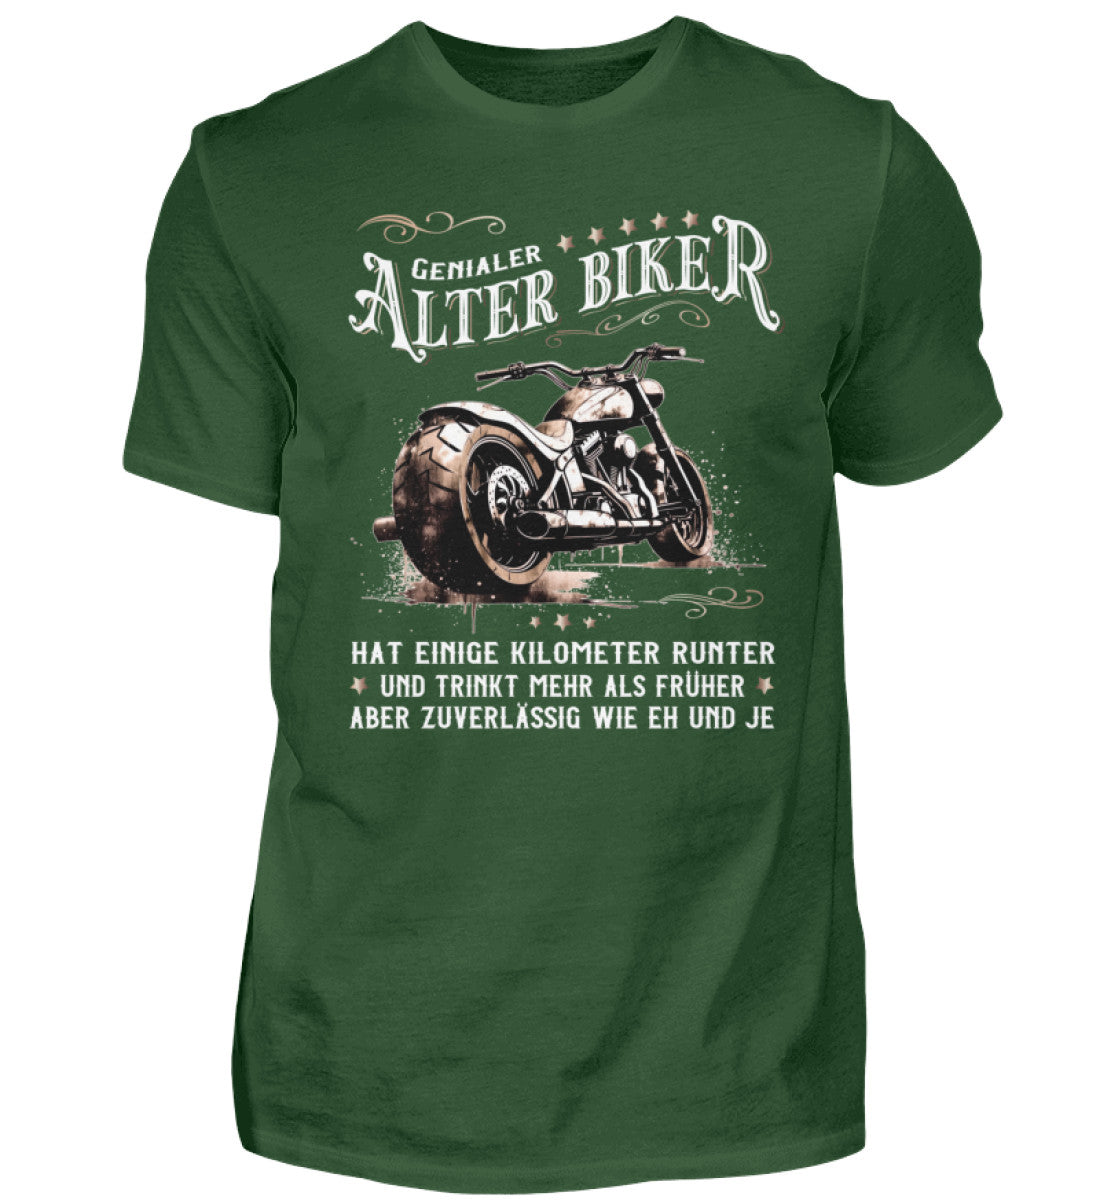 Ein Biker T-Shirt für Motorradfahrer von Wingbikers mit dem Aufdruck, Alter Biker - Einige Kilometer runter, trinkt mehr - aber zuverlässig wie eh und je - in dunkelgrün.